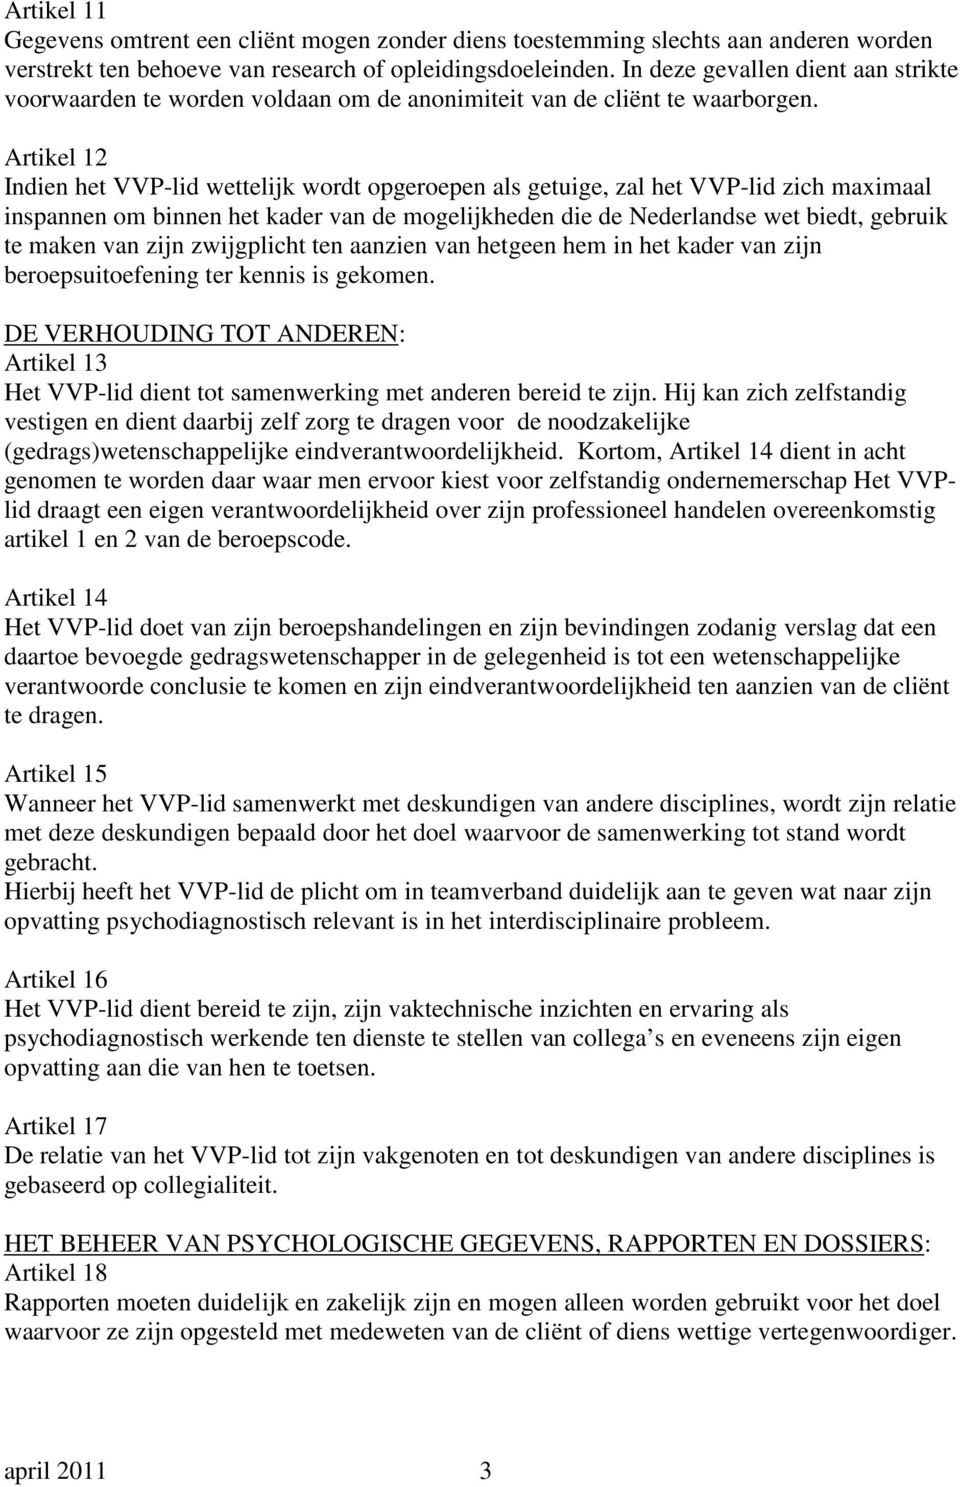 Artikel 12 Indien het VVP-lid wettelijk wordt opgeroepen als getuige, zal het VVP-lid zich maximaal inspannen om binnen het kader van de mogelijkheden die de Nederlandse wet biedt, gebruik te maken